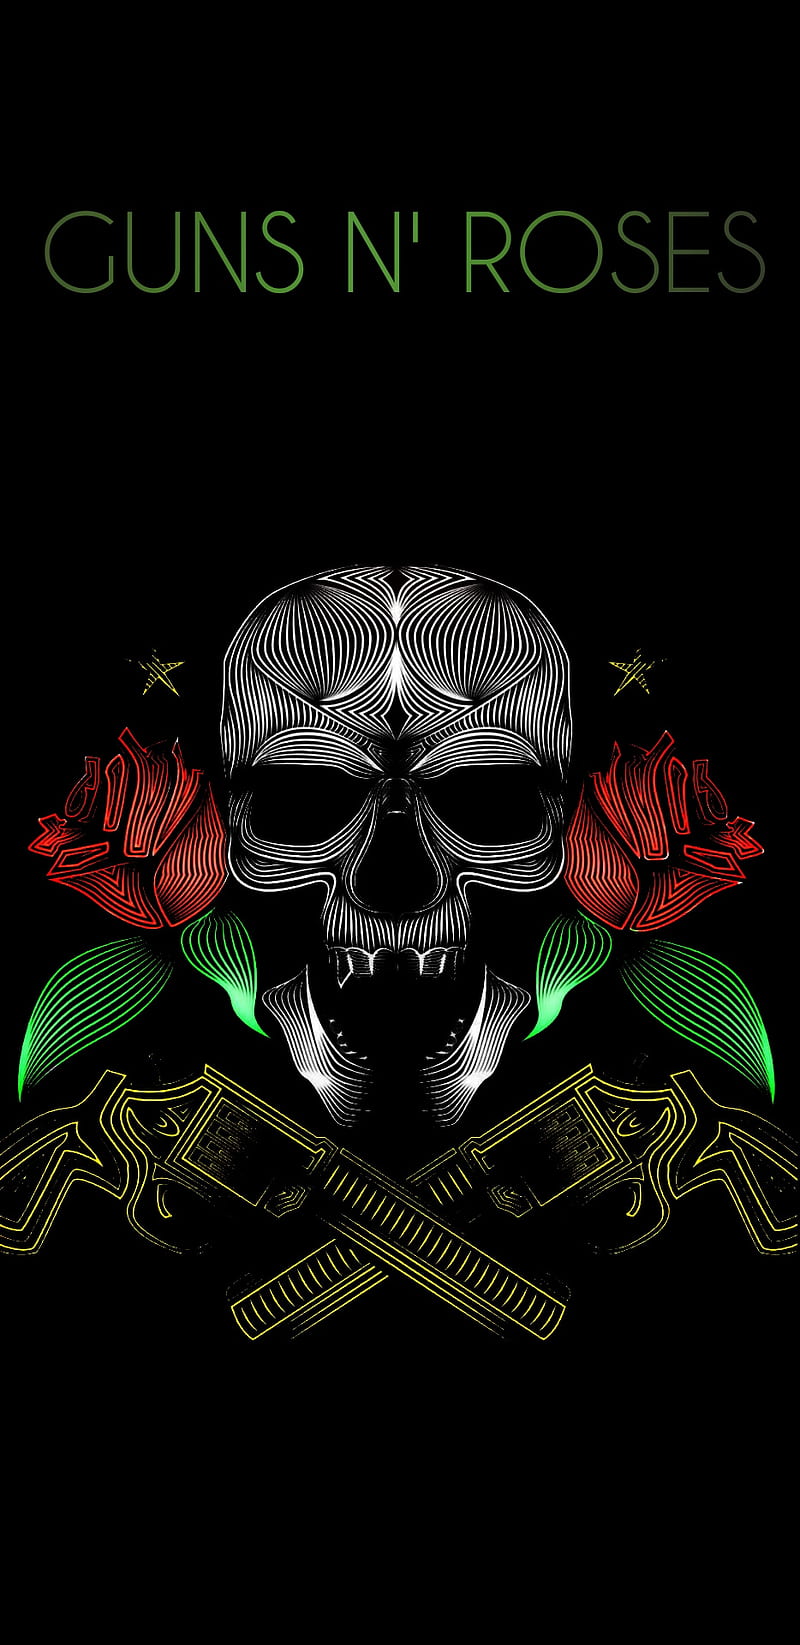 41+] Guns N Roses HD Wallpaper - WallpaperSafari